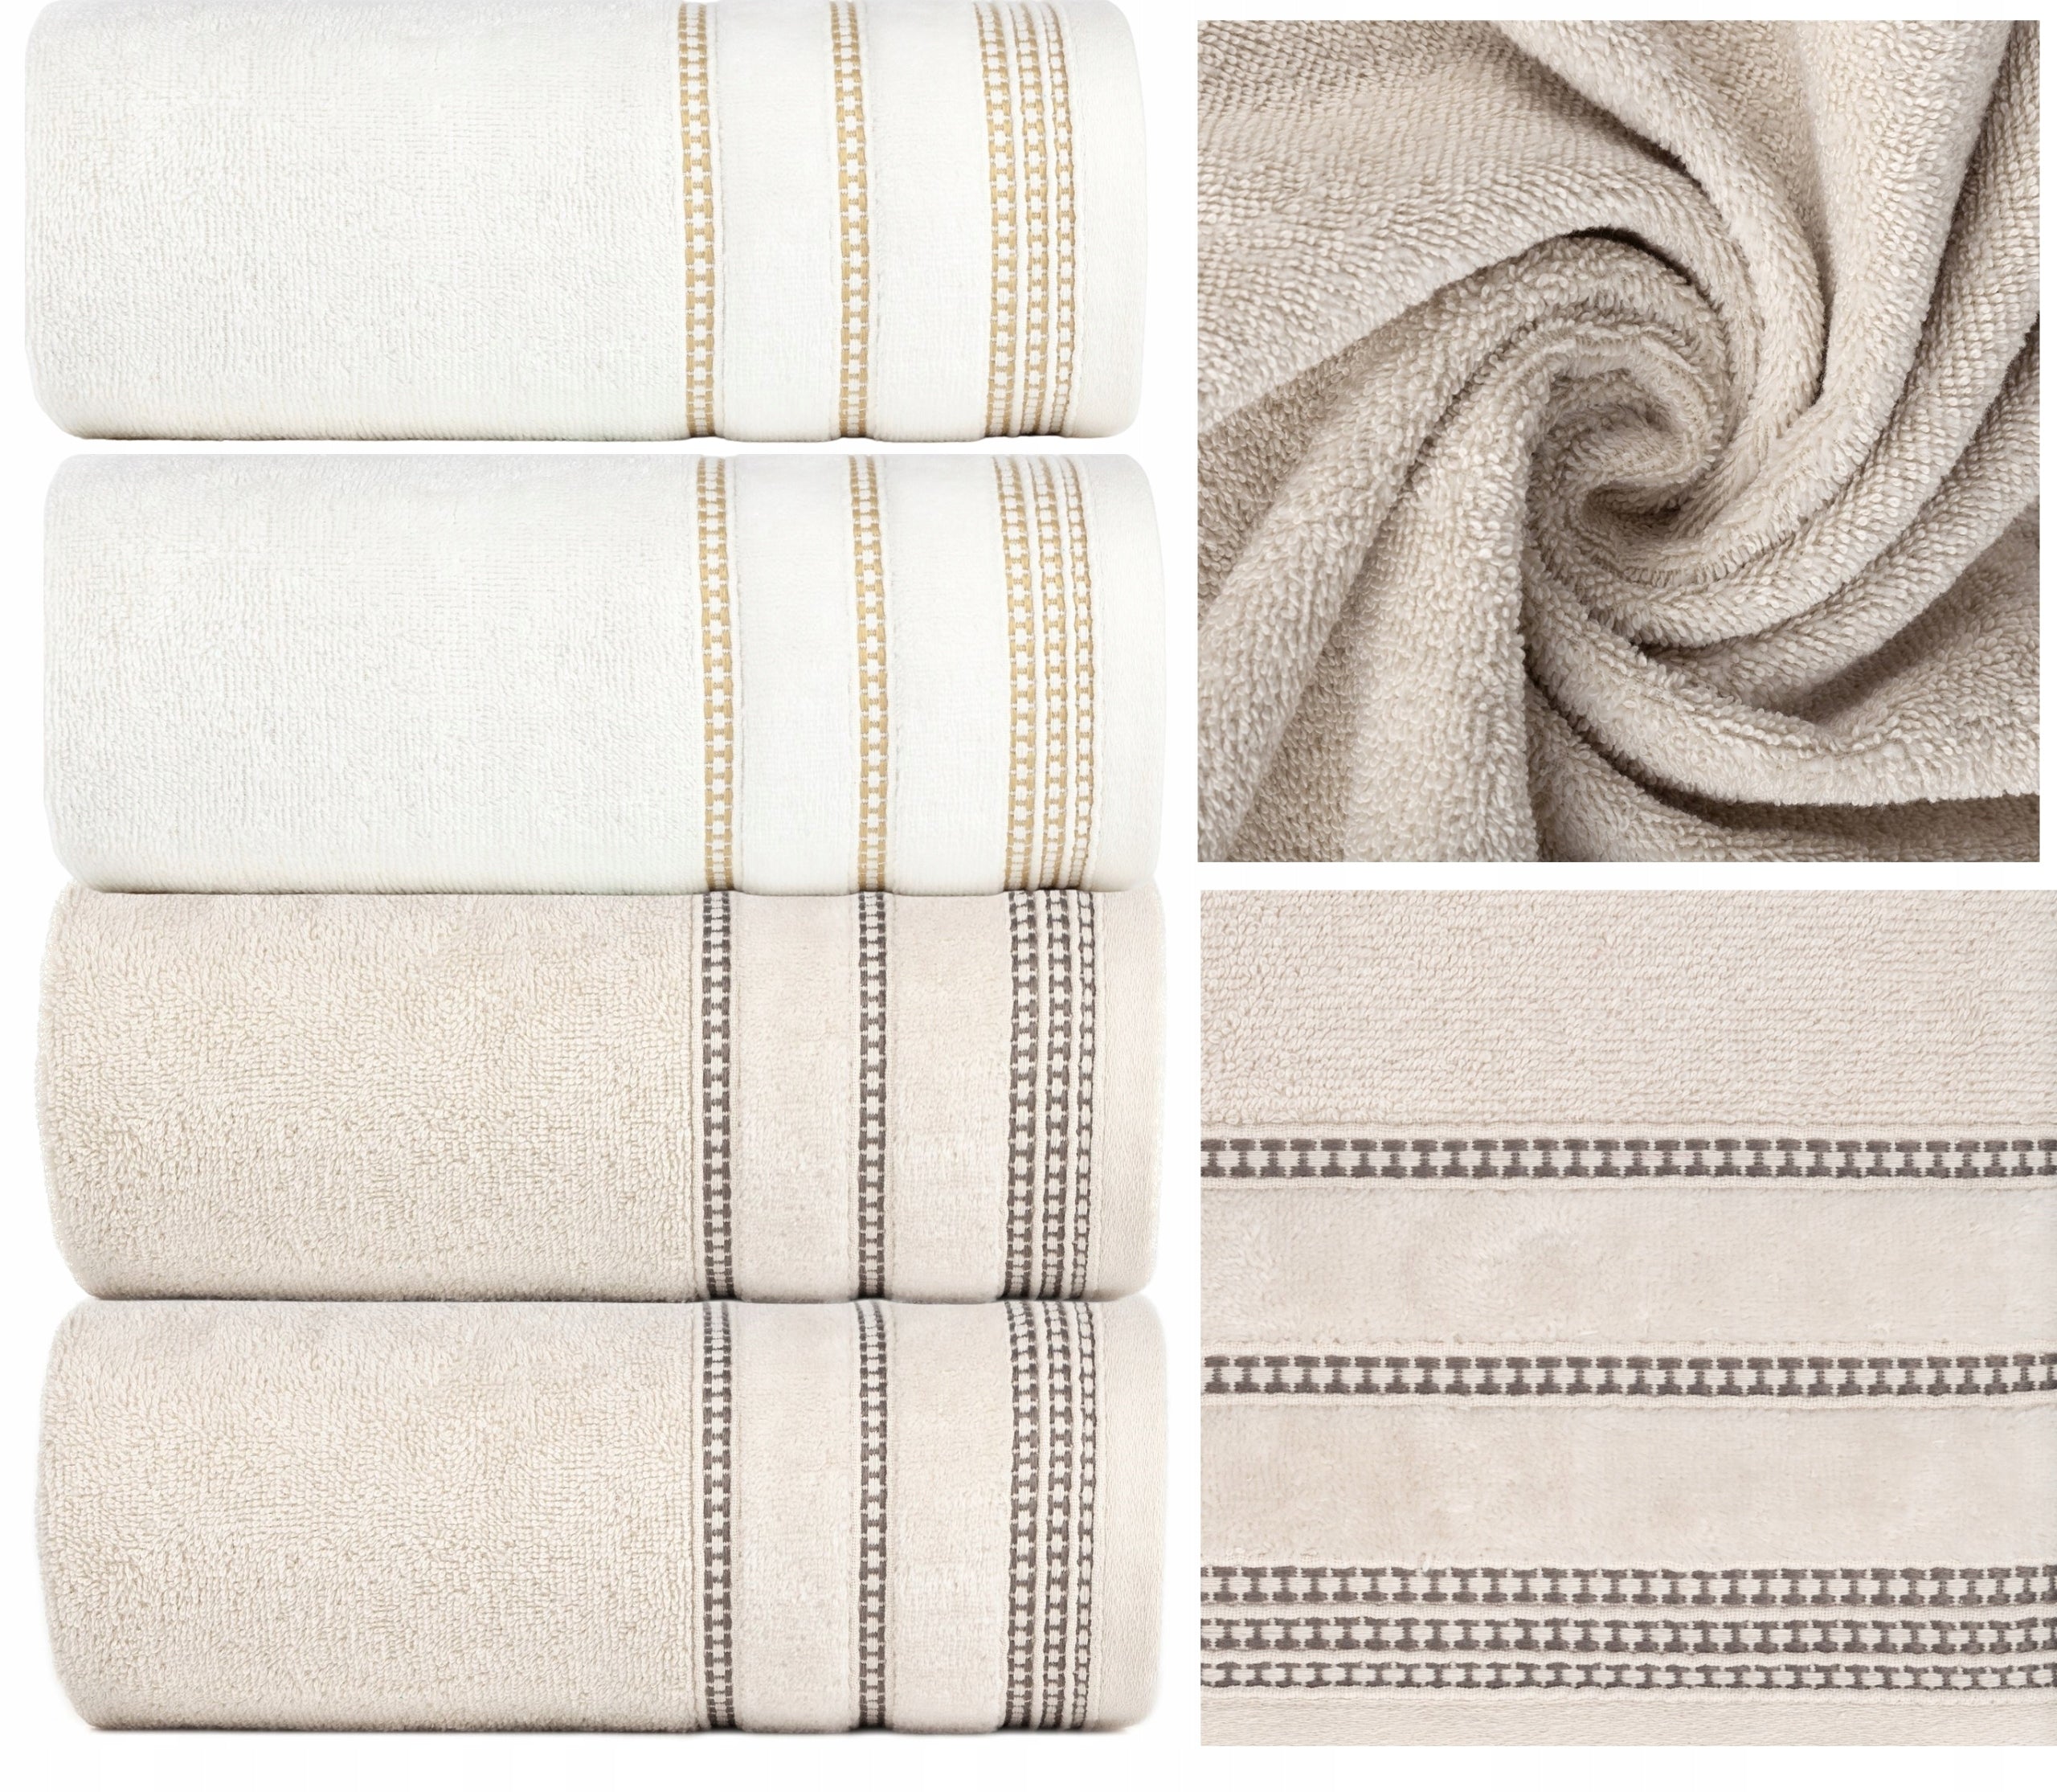 Komplett sett med 4 luksuriøse bomullshåndklær i forskjellige farger